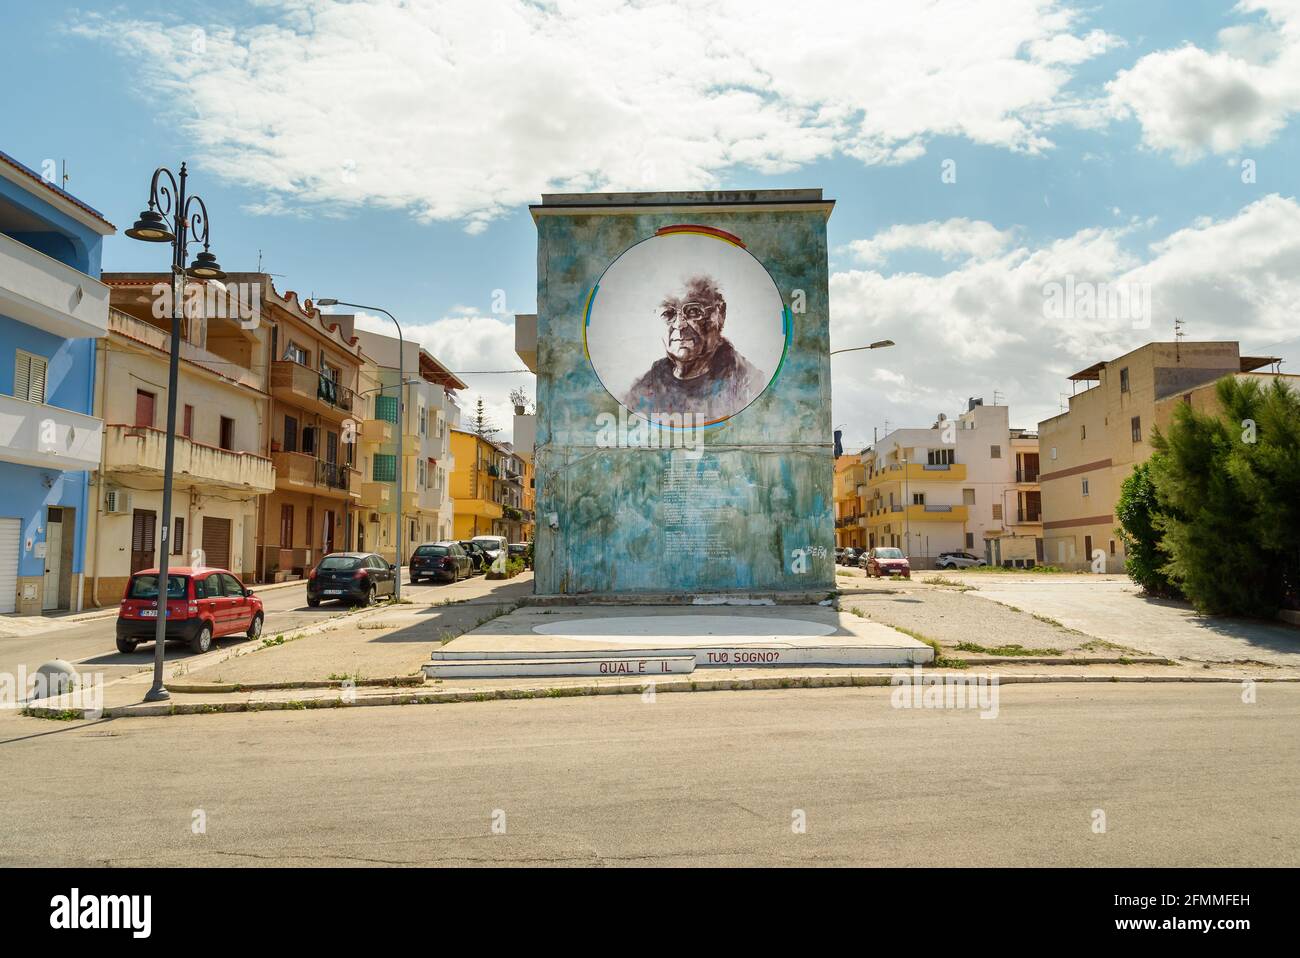 Trappeto, Sizilien, Italien - 27. September 2020: Riesiges Wandgemälde von Danilo Dolci, des Bürgers par excellence, Kandidat für den Nobelpreis, auf dem Meeresboden Stockfoto